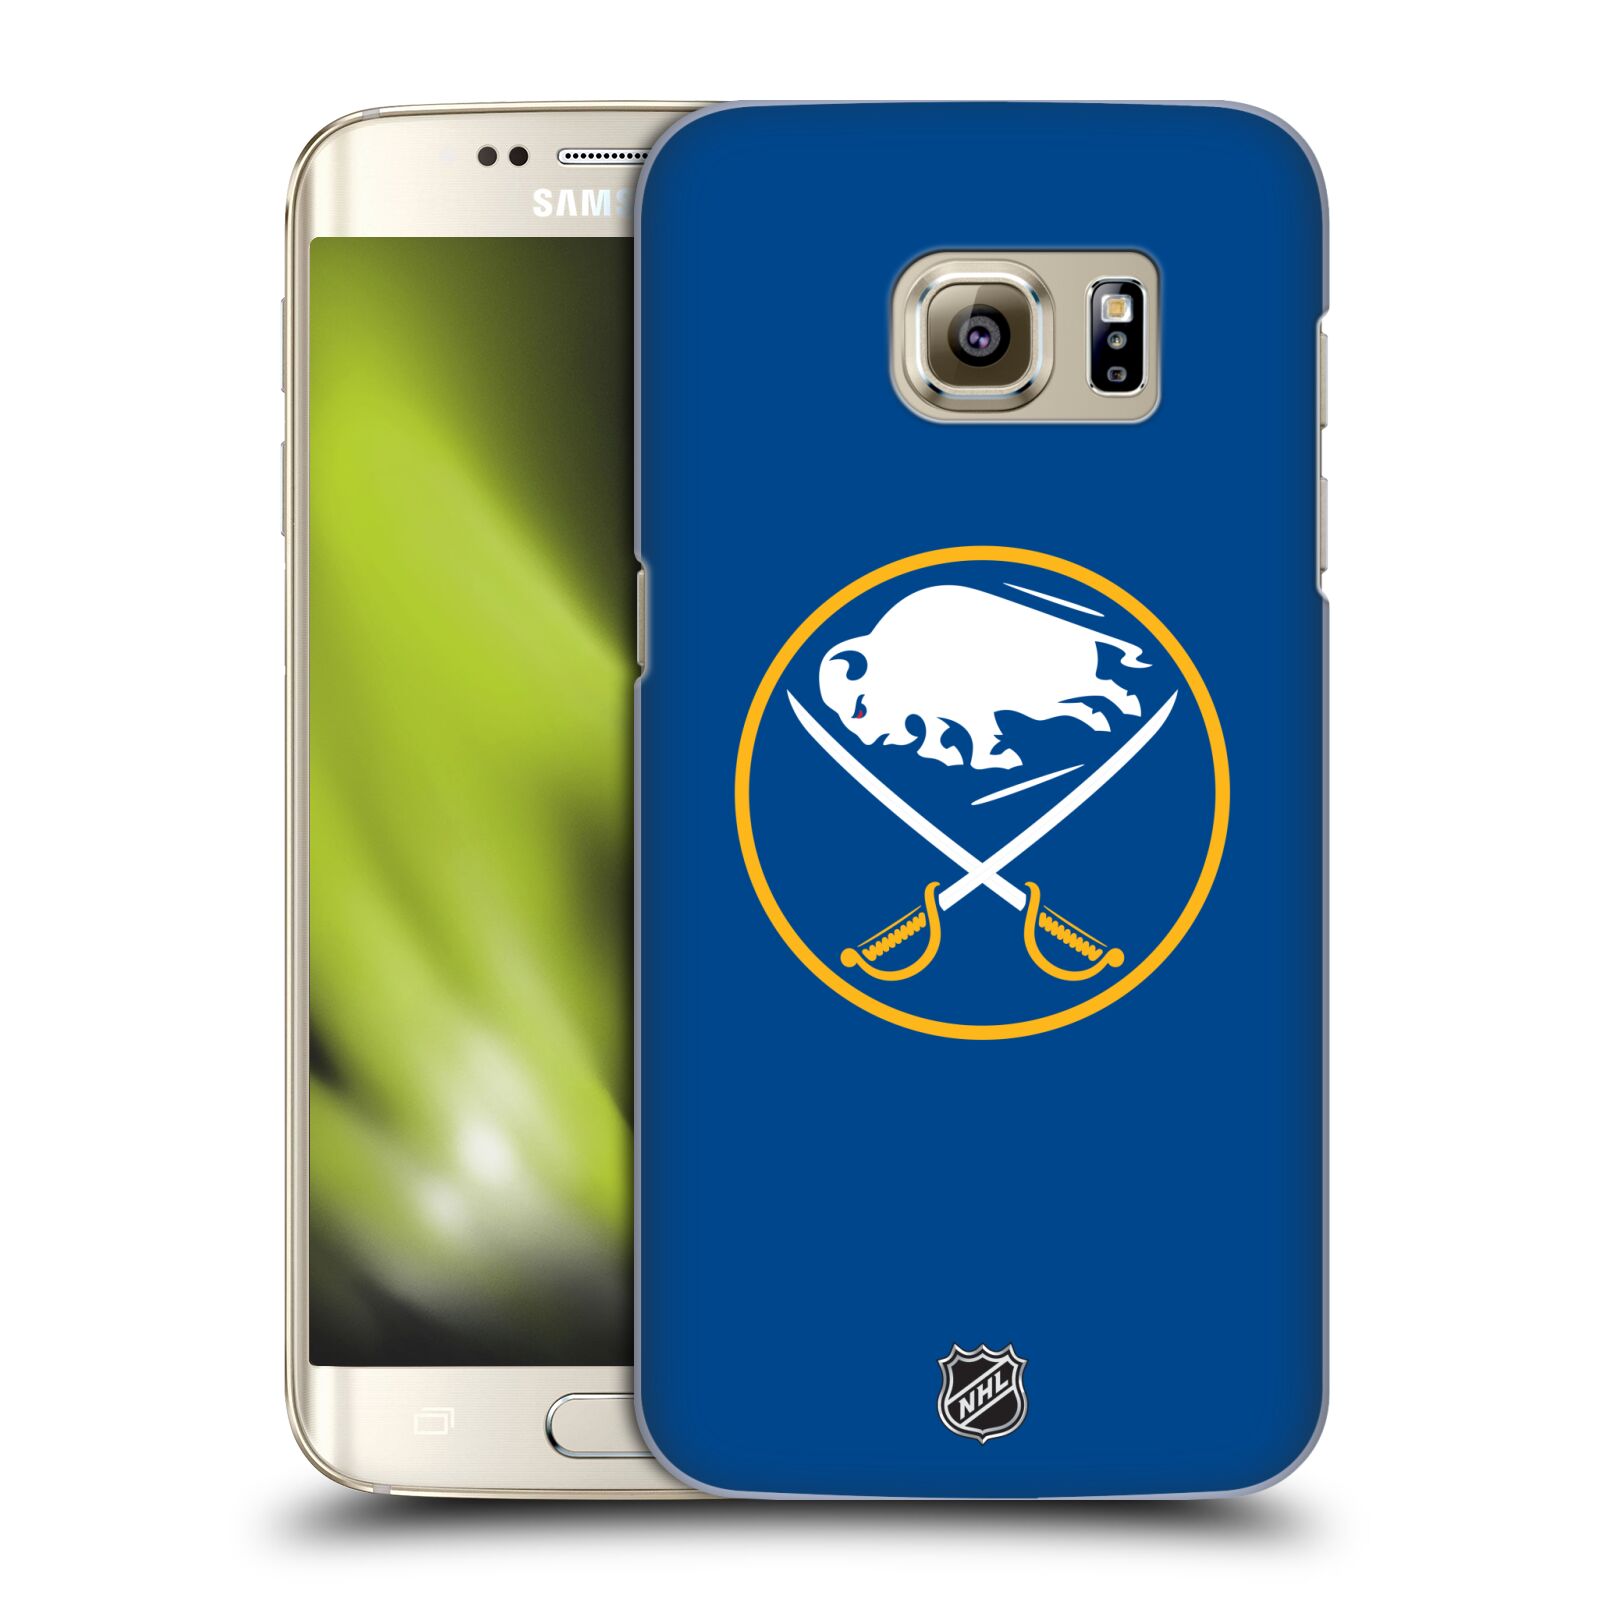 Pouzdro na mobil Samsung Galaxy S7 EDGE - HEAD CASE - Hokej NHL - Buffalo Sabres - modré pozadí